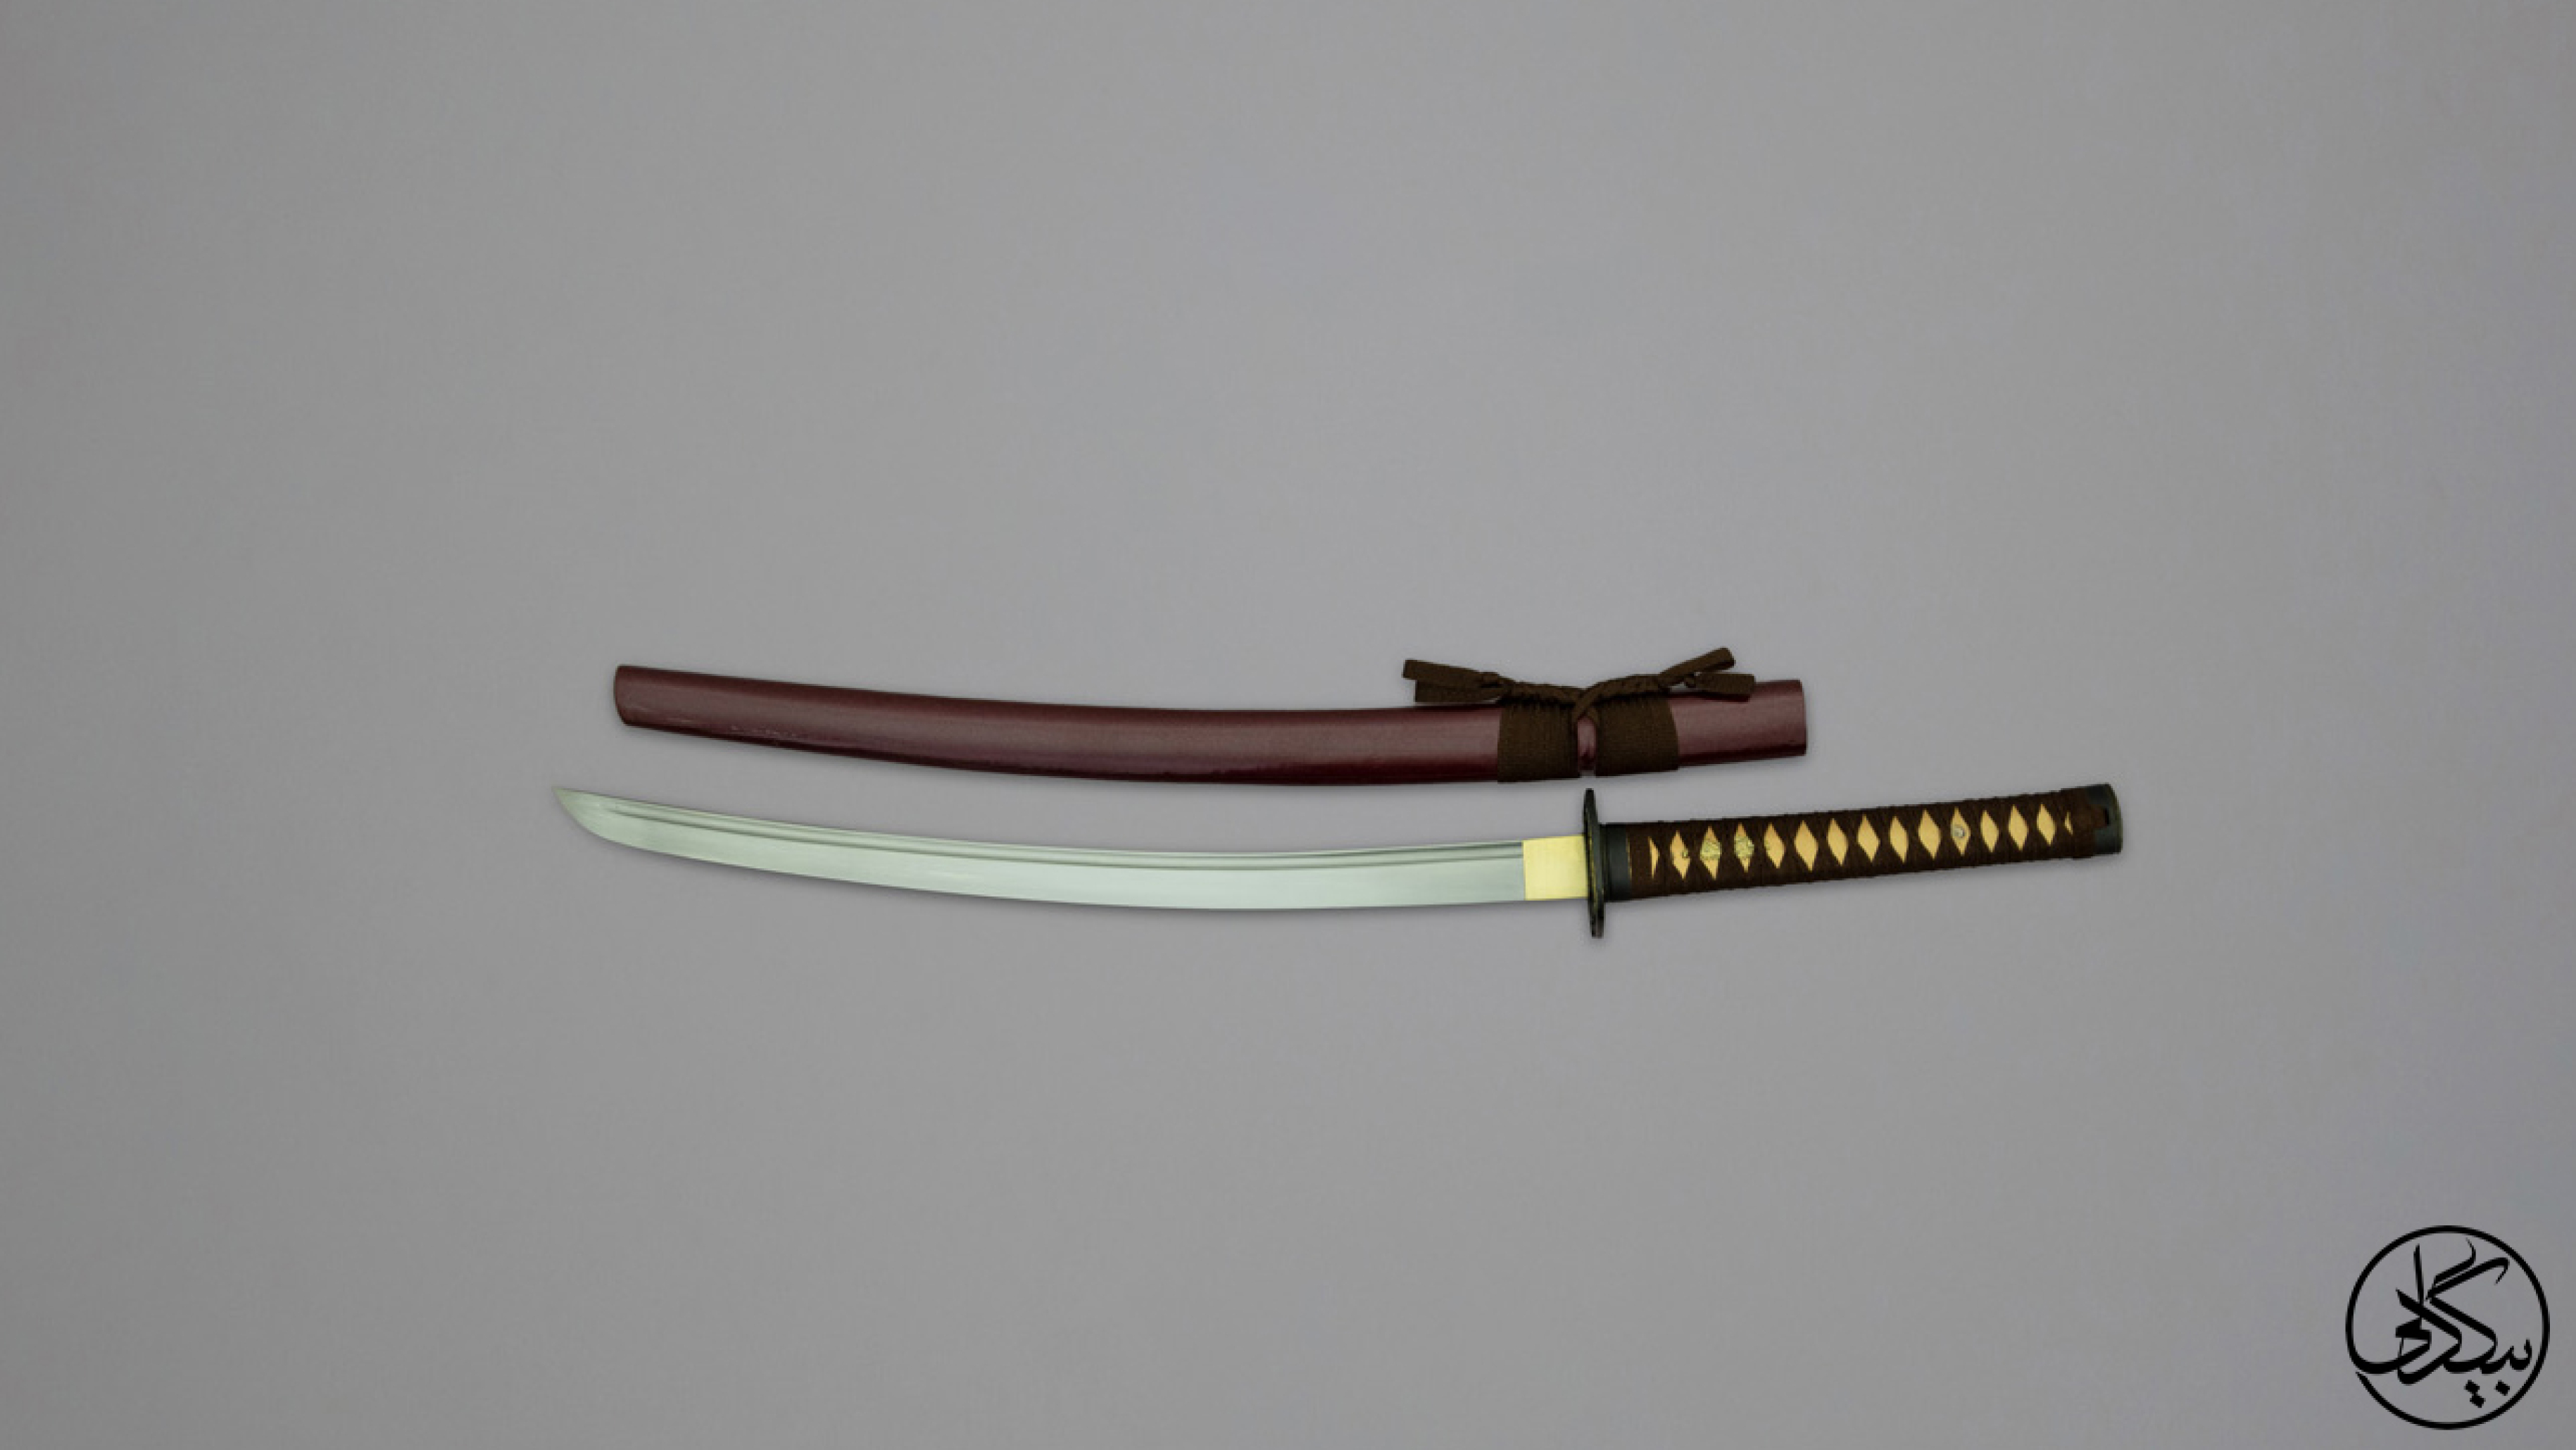  شمشیر واکی زاشی 